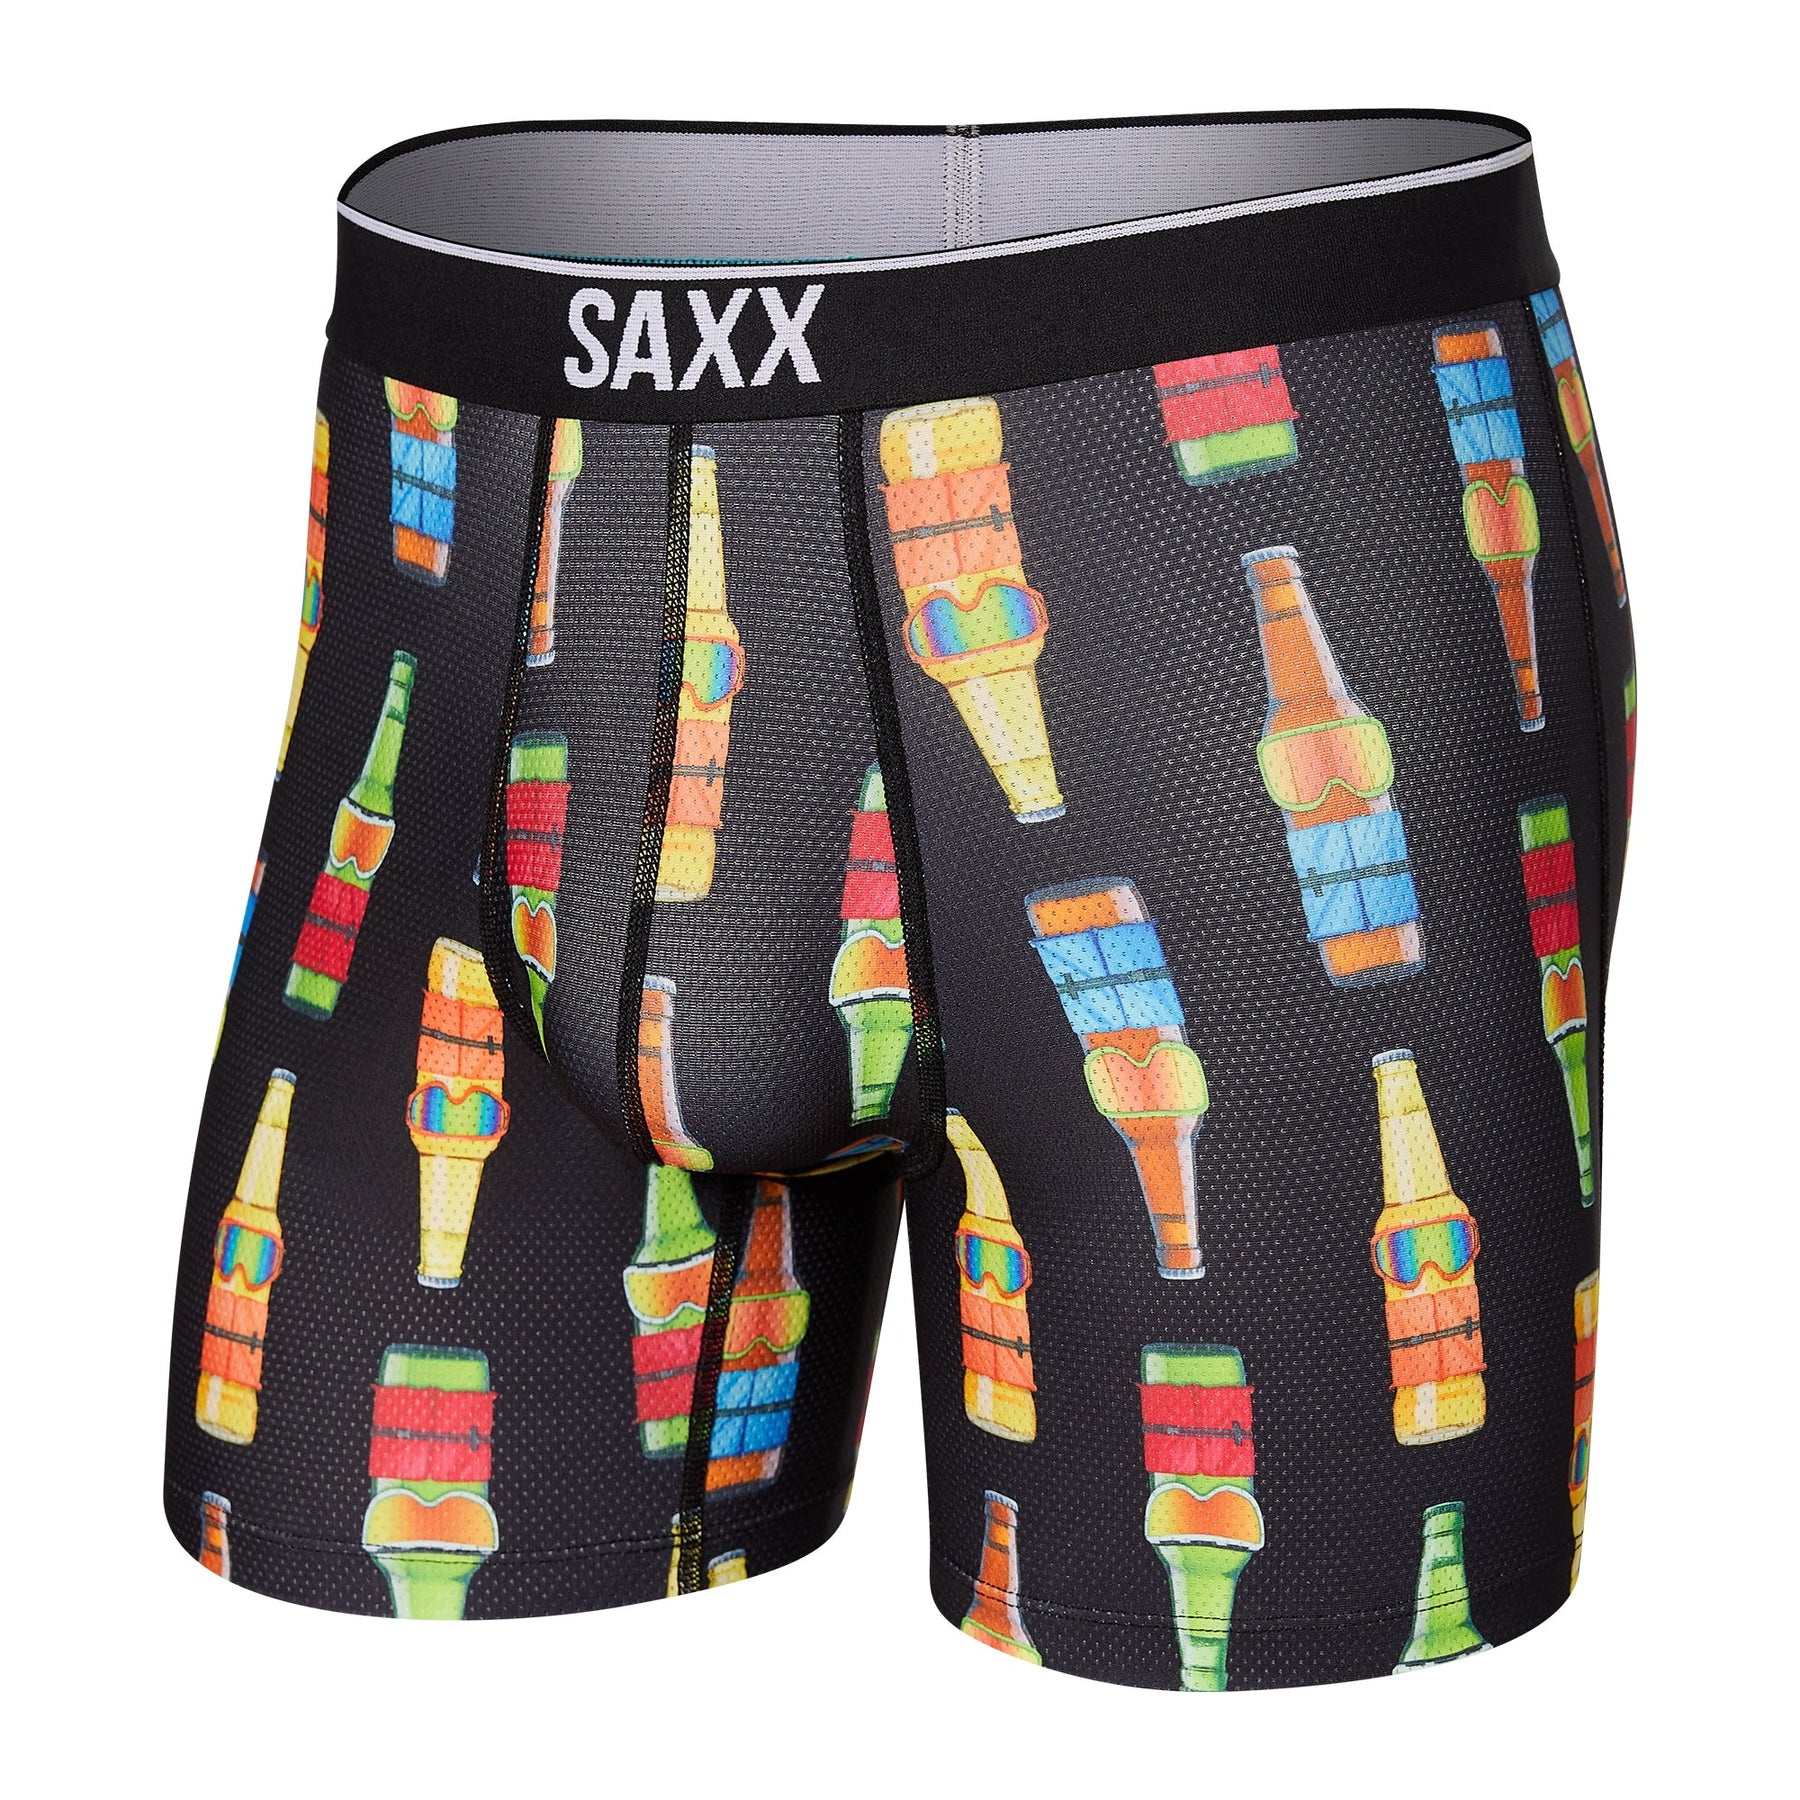 Sous-vêtement pour homme par Saxx | SXBB29 GBG | Boutique Vvög, vêtements mode pour hommes